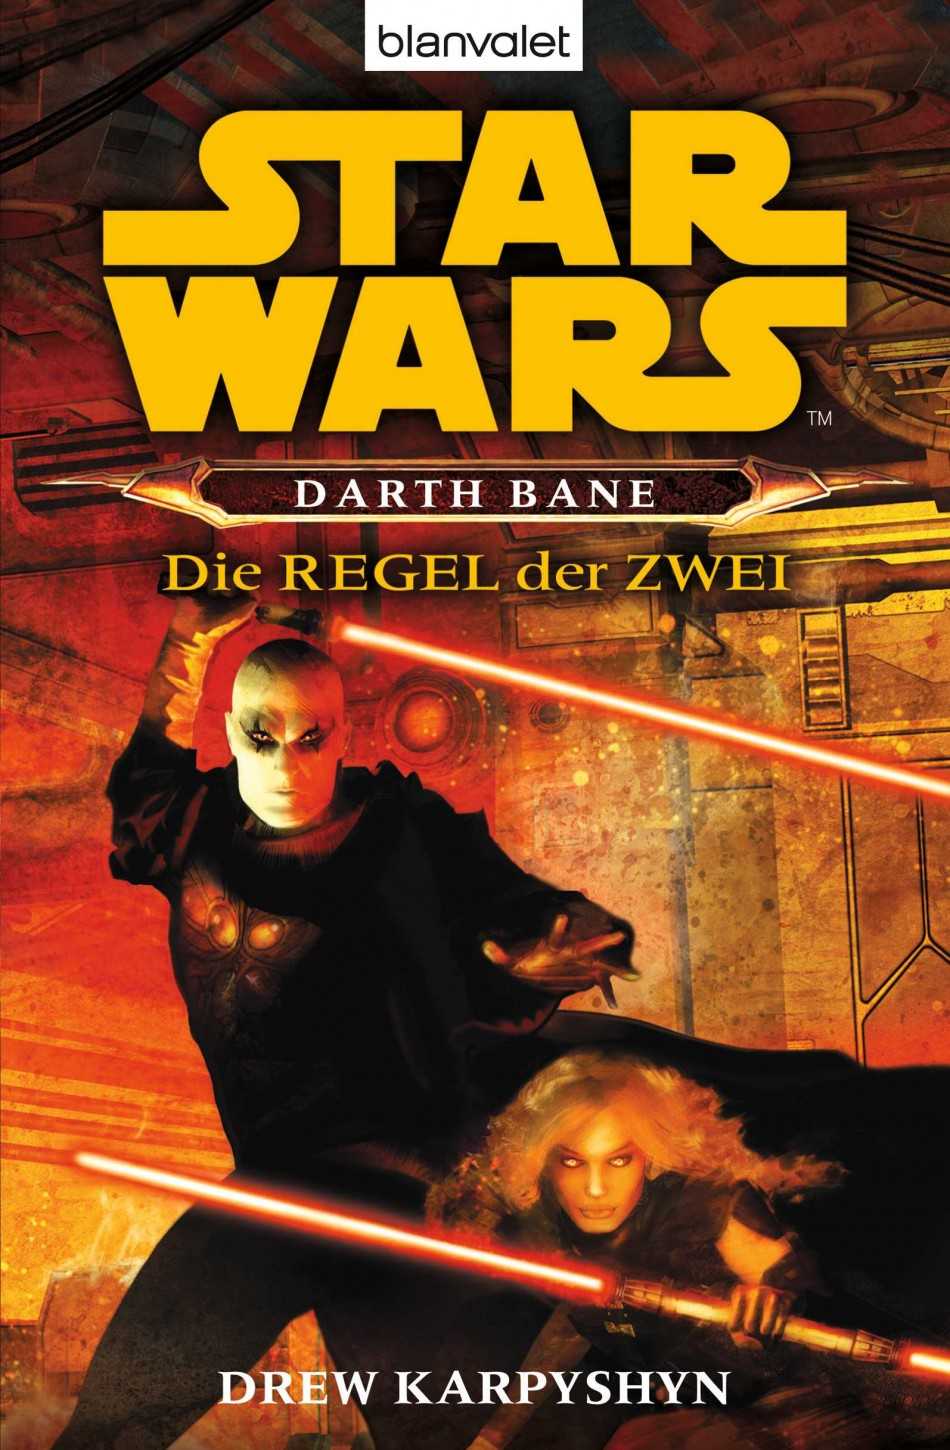 Okładka wydania niemieckiego - Darth Bane: Die Regel der Zwei